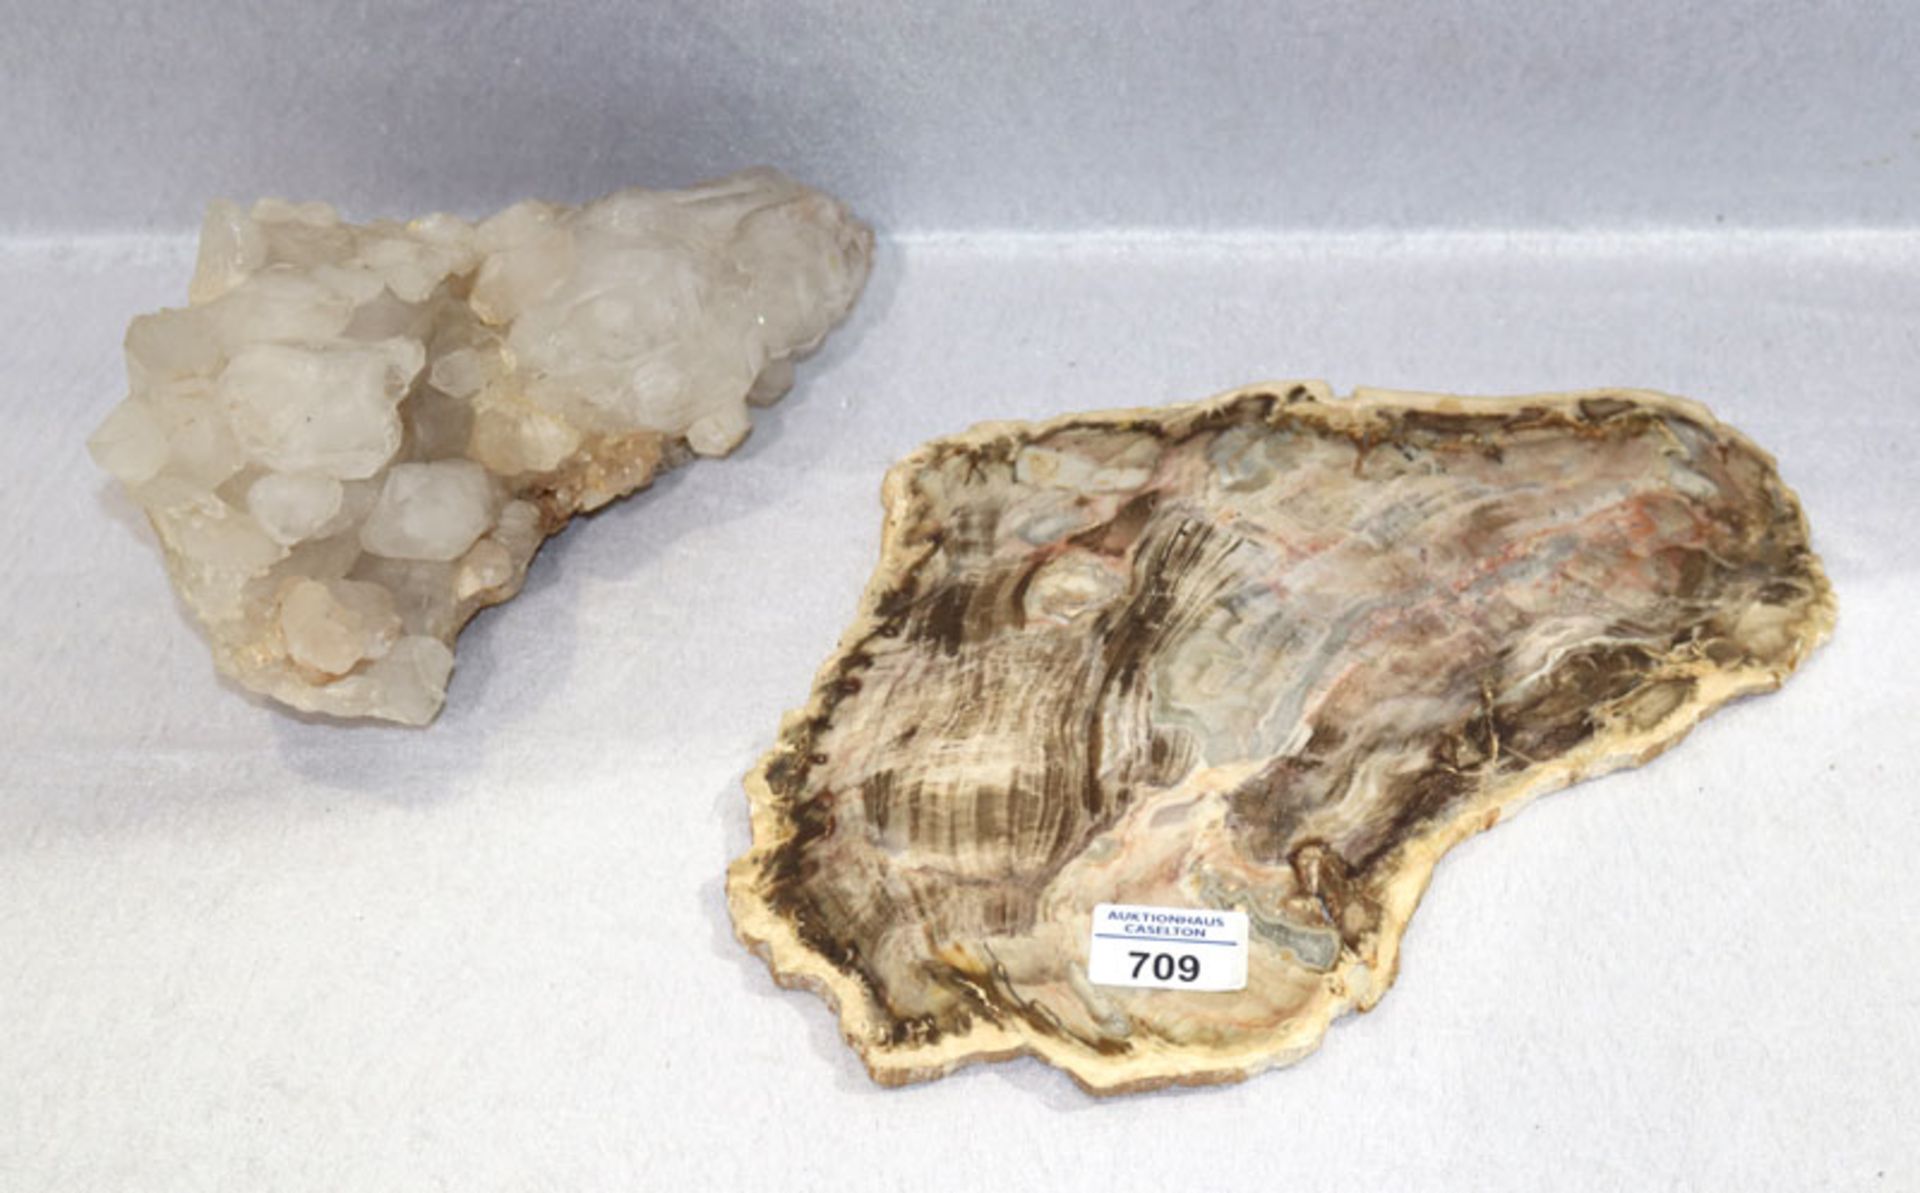 Bergkristall Stufe, H 12 cm, B 23 cm, T 12 cm, und Scheibe von versteinertem Holz, H 22 cm, B 32 cm